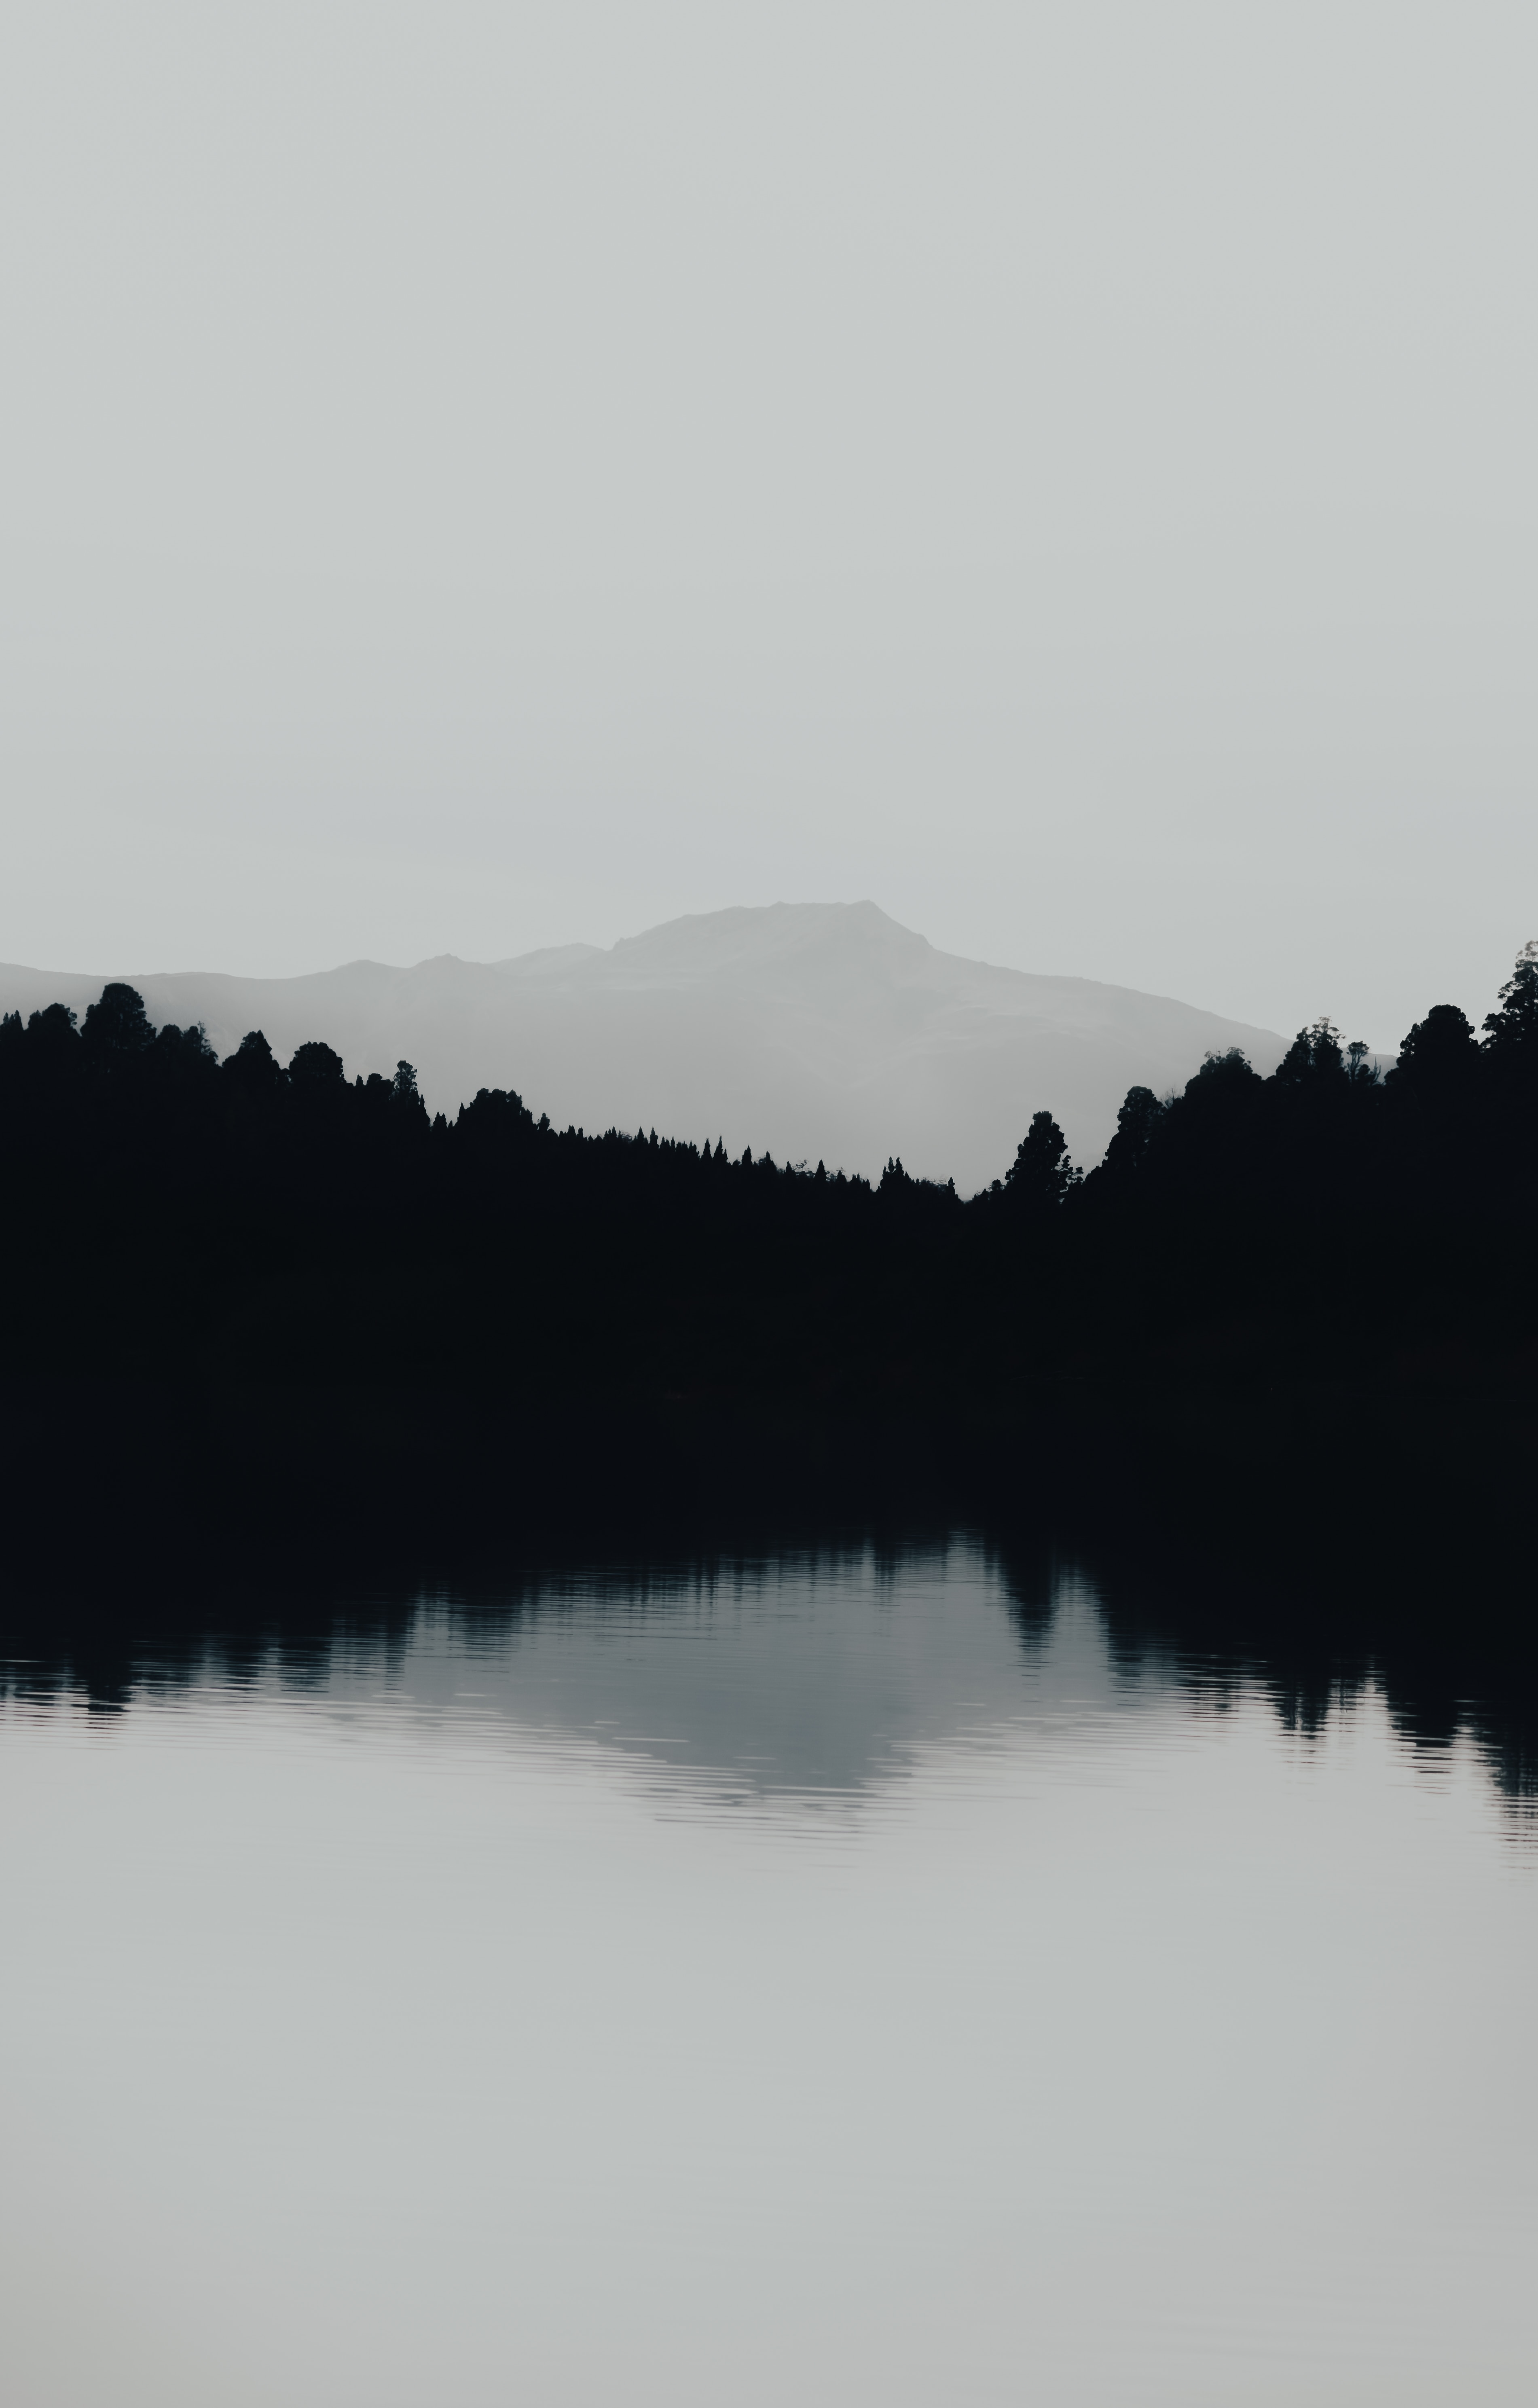 bw, chb, landscape, nature, mountain, lake, fog images